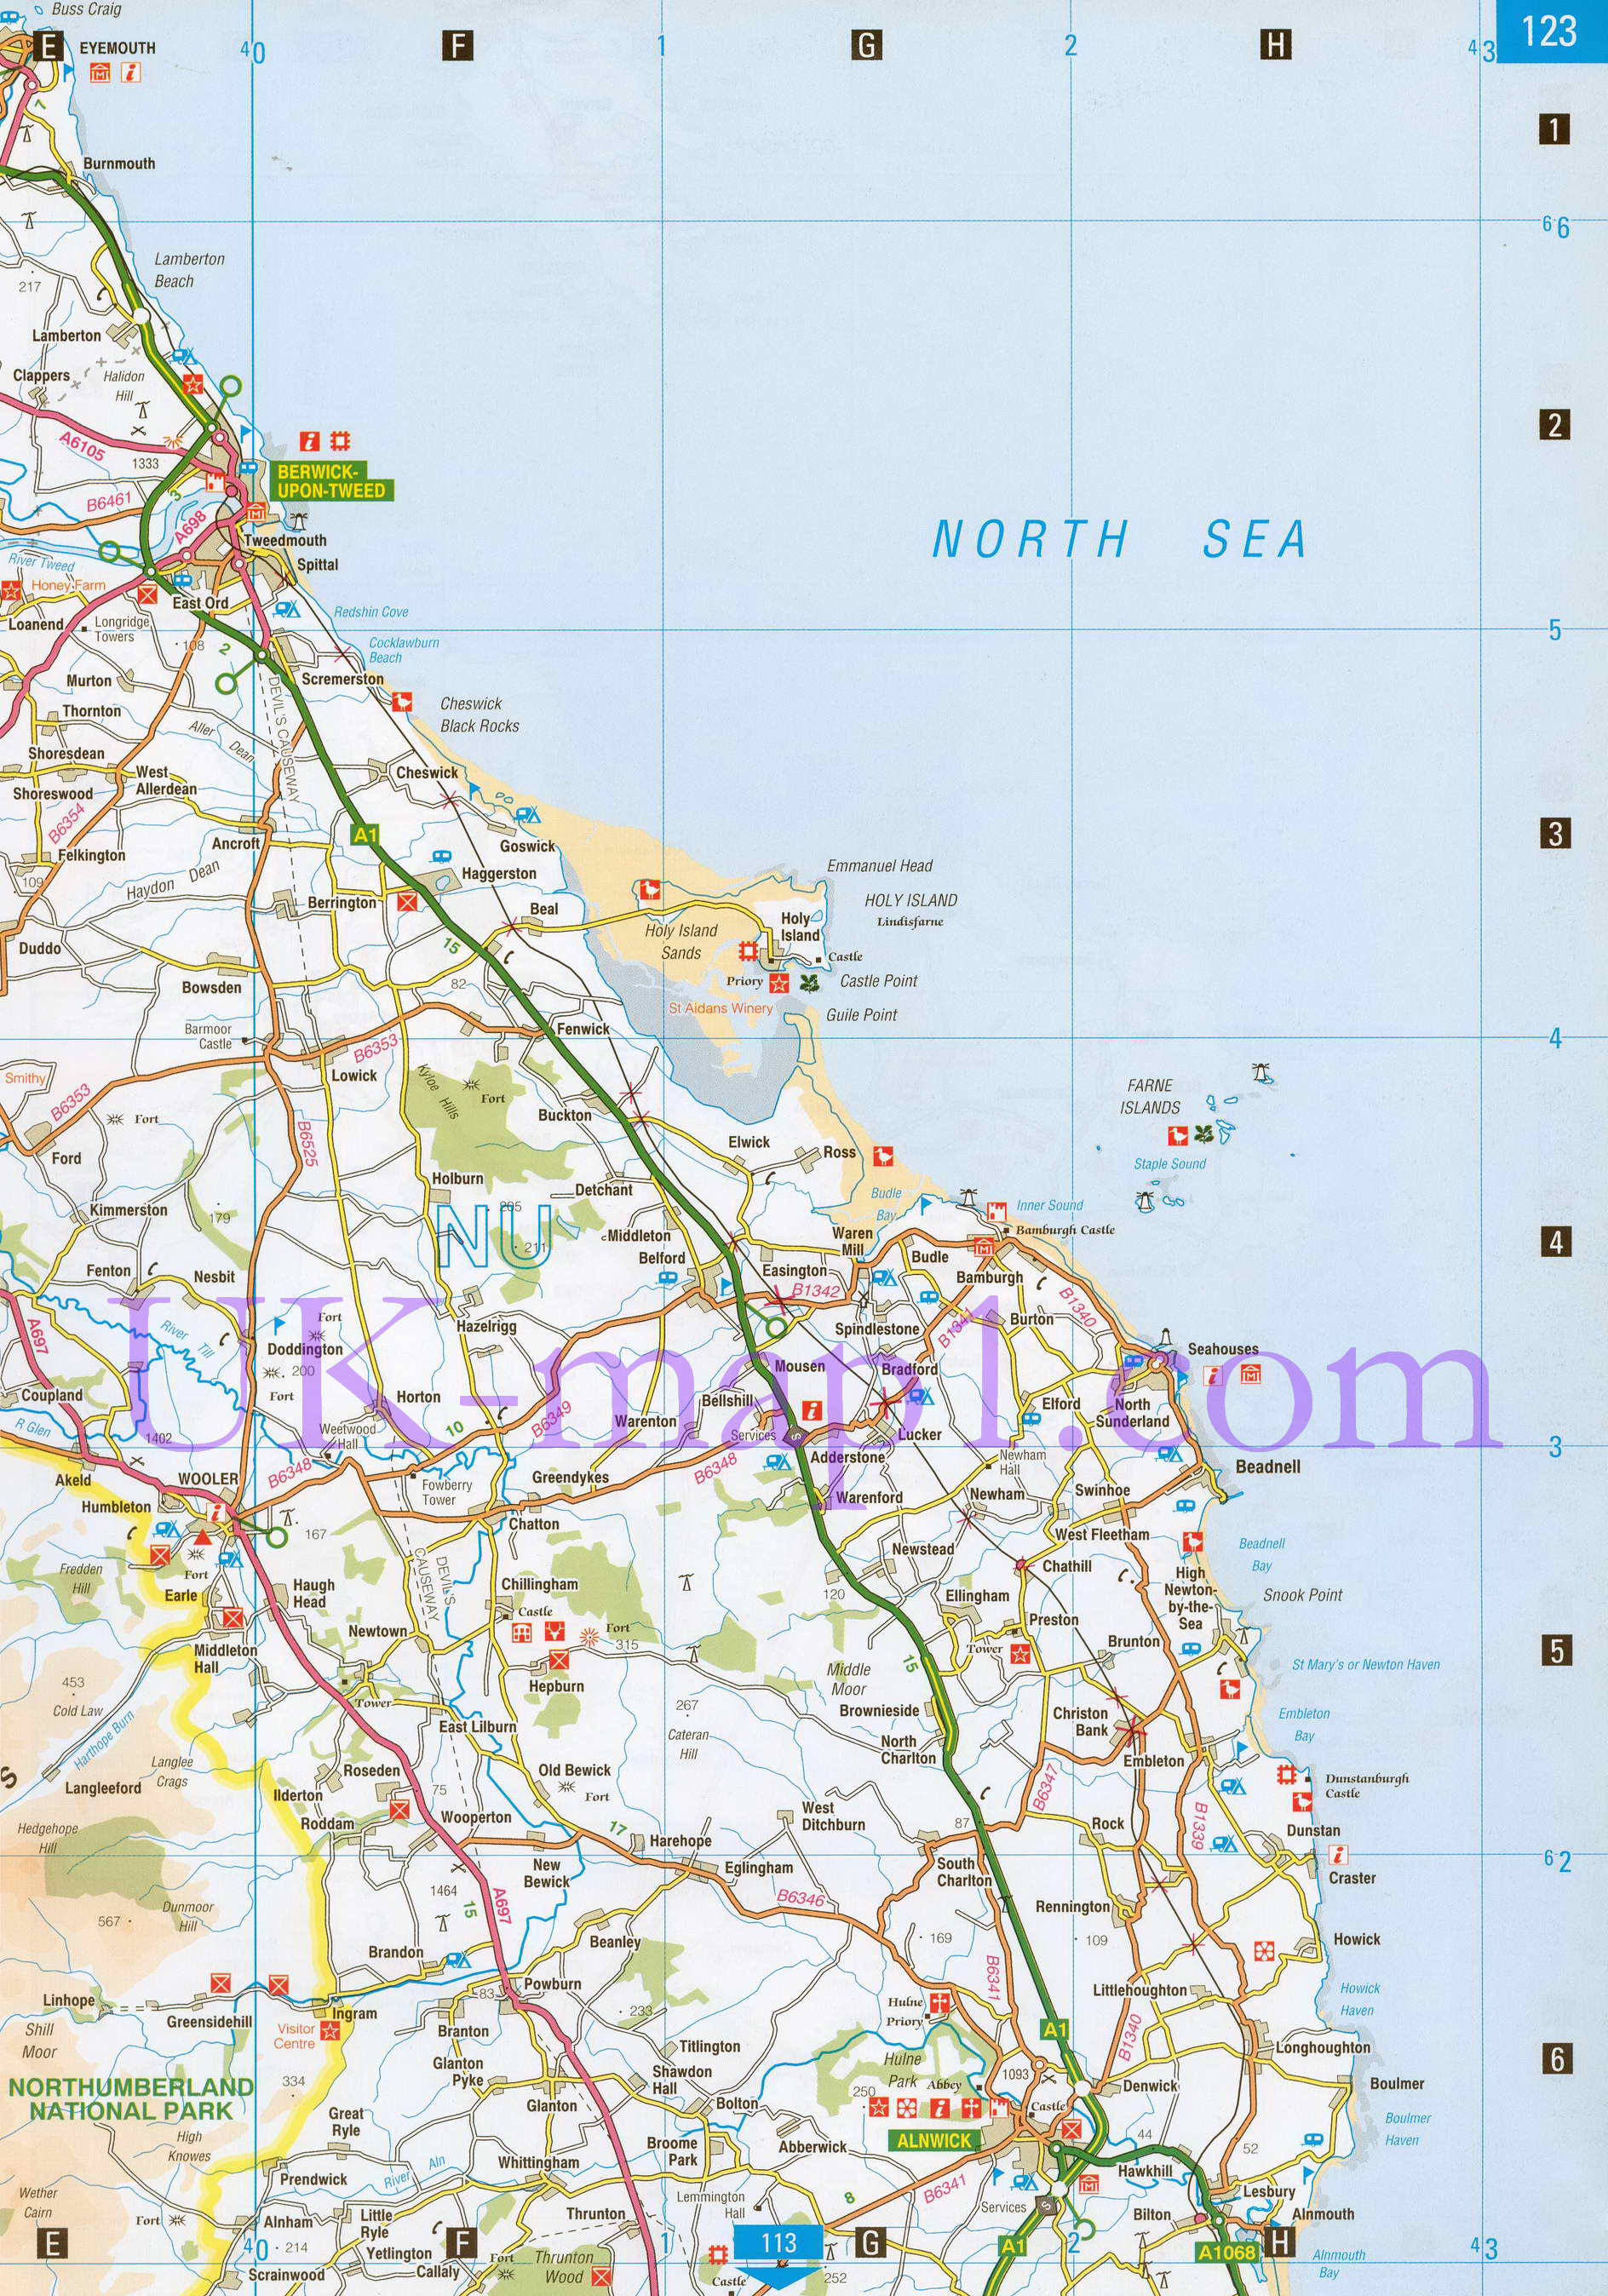 Карта графства Нортамберленд (север). Подробная карта автомобильных дорог графства Нортамберленд (Англия), B0 - 